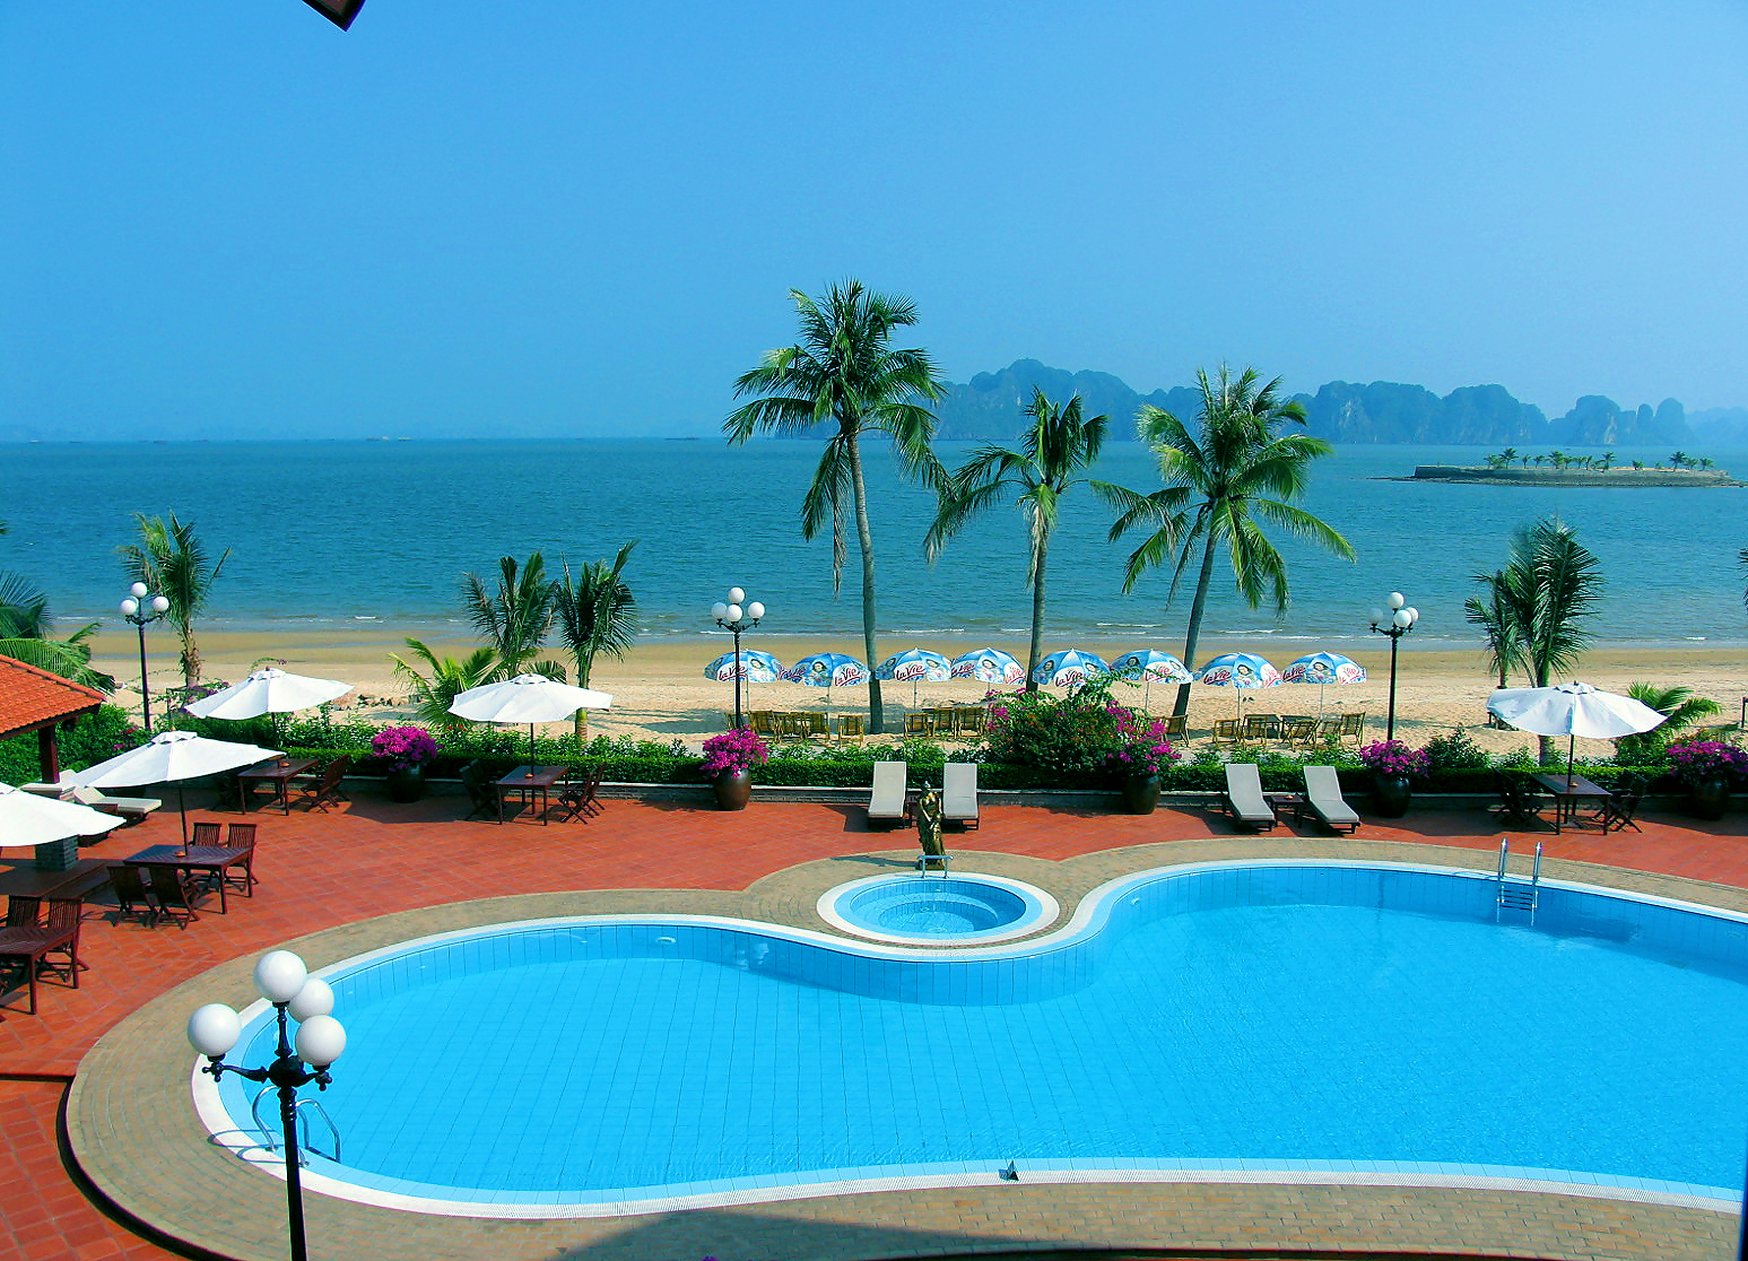 Foto av Tuan Chau Resort beach med hög nivå av renlighet